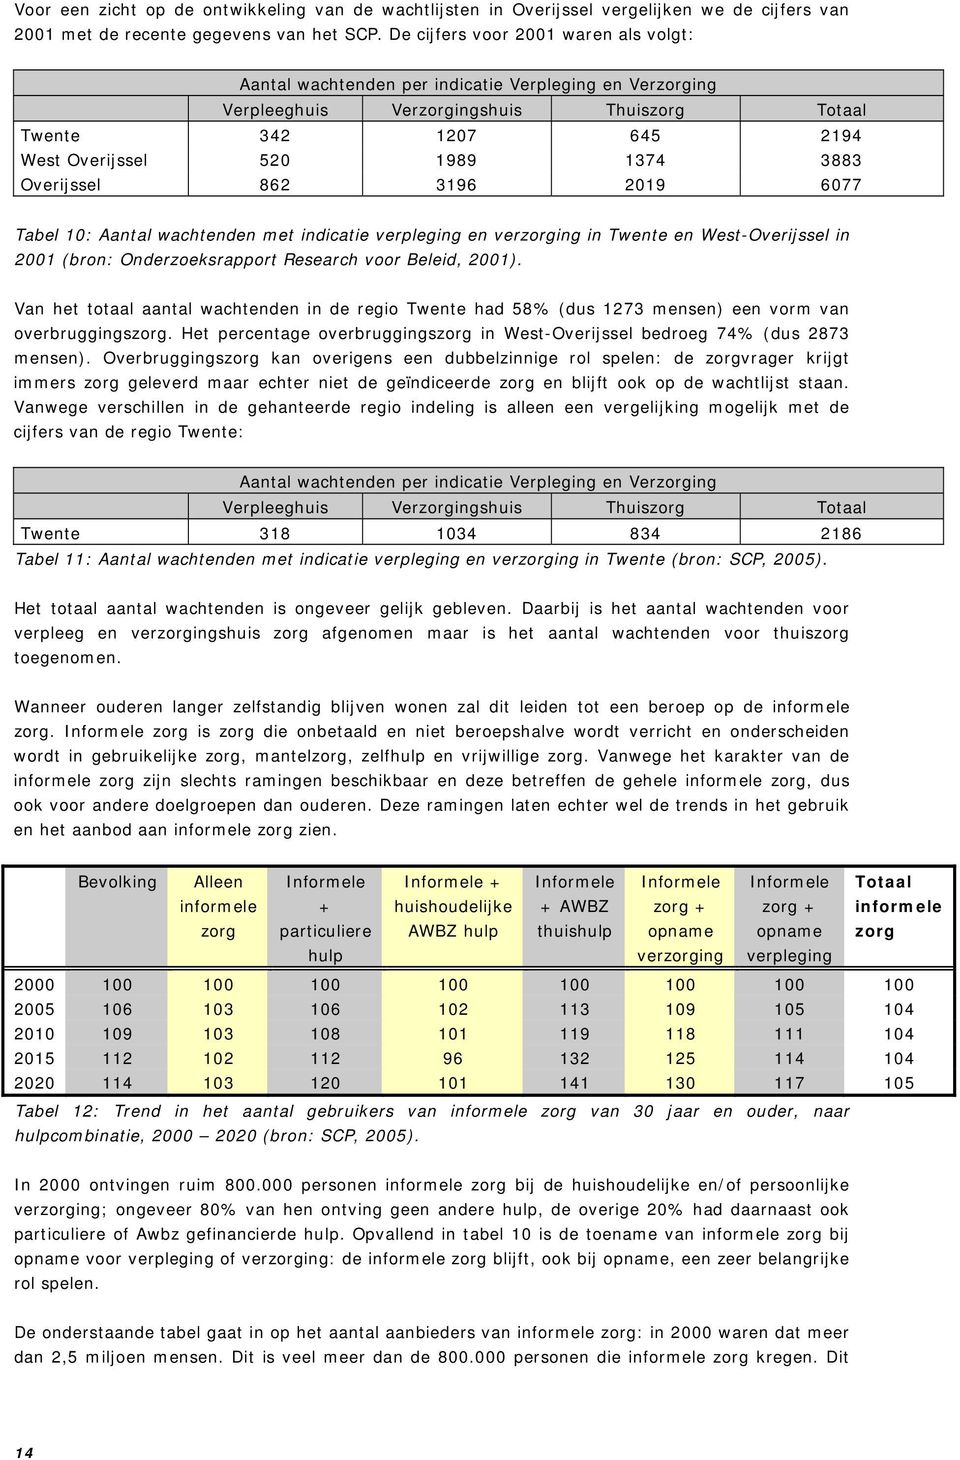 3883 Overijssel 862 3196 2019 6077 Tabel 10: Aantal wachtenden met indicatie verpleging en verzorging in Twente en West-Overijssel in 2001 (bron: Onderzoeksrapport Research voor Beleid, 2001).